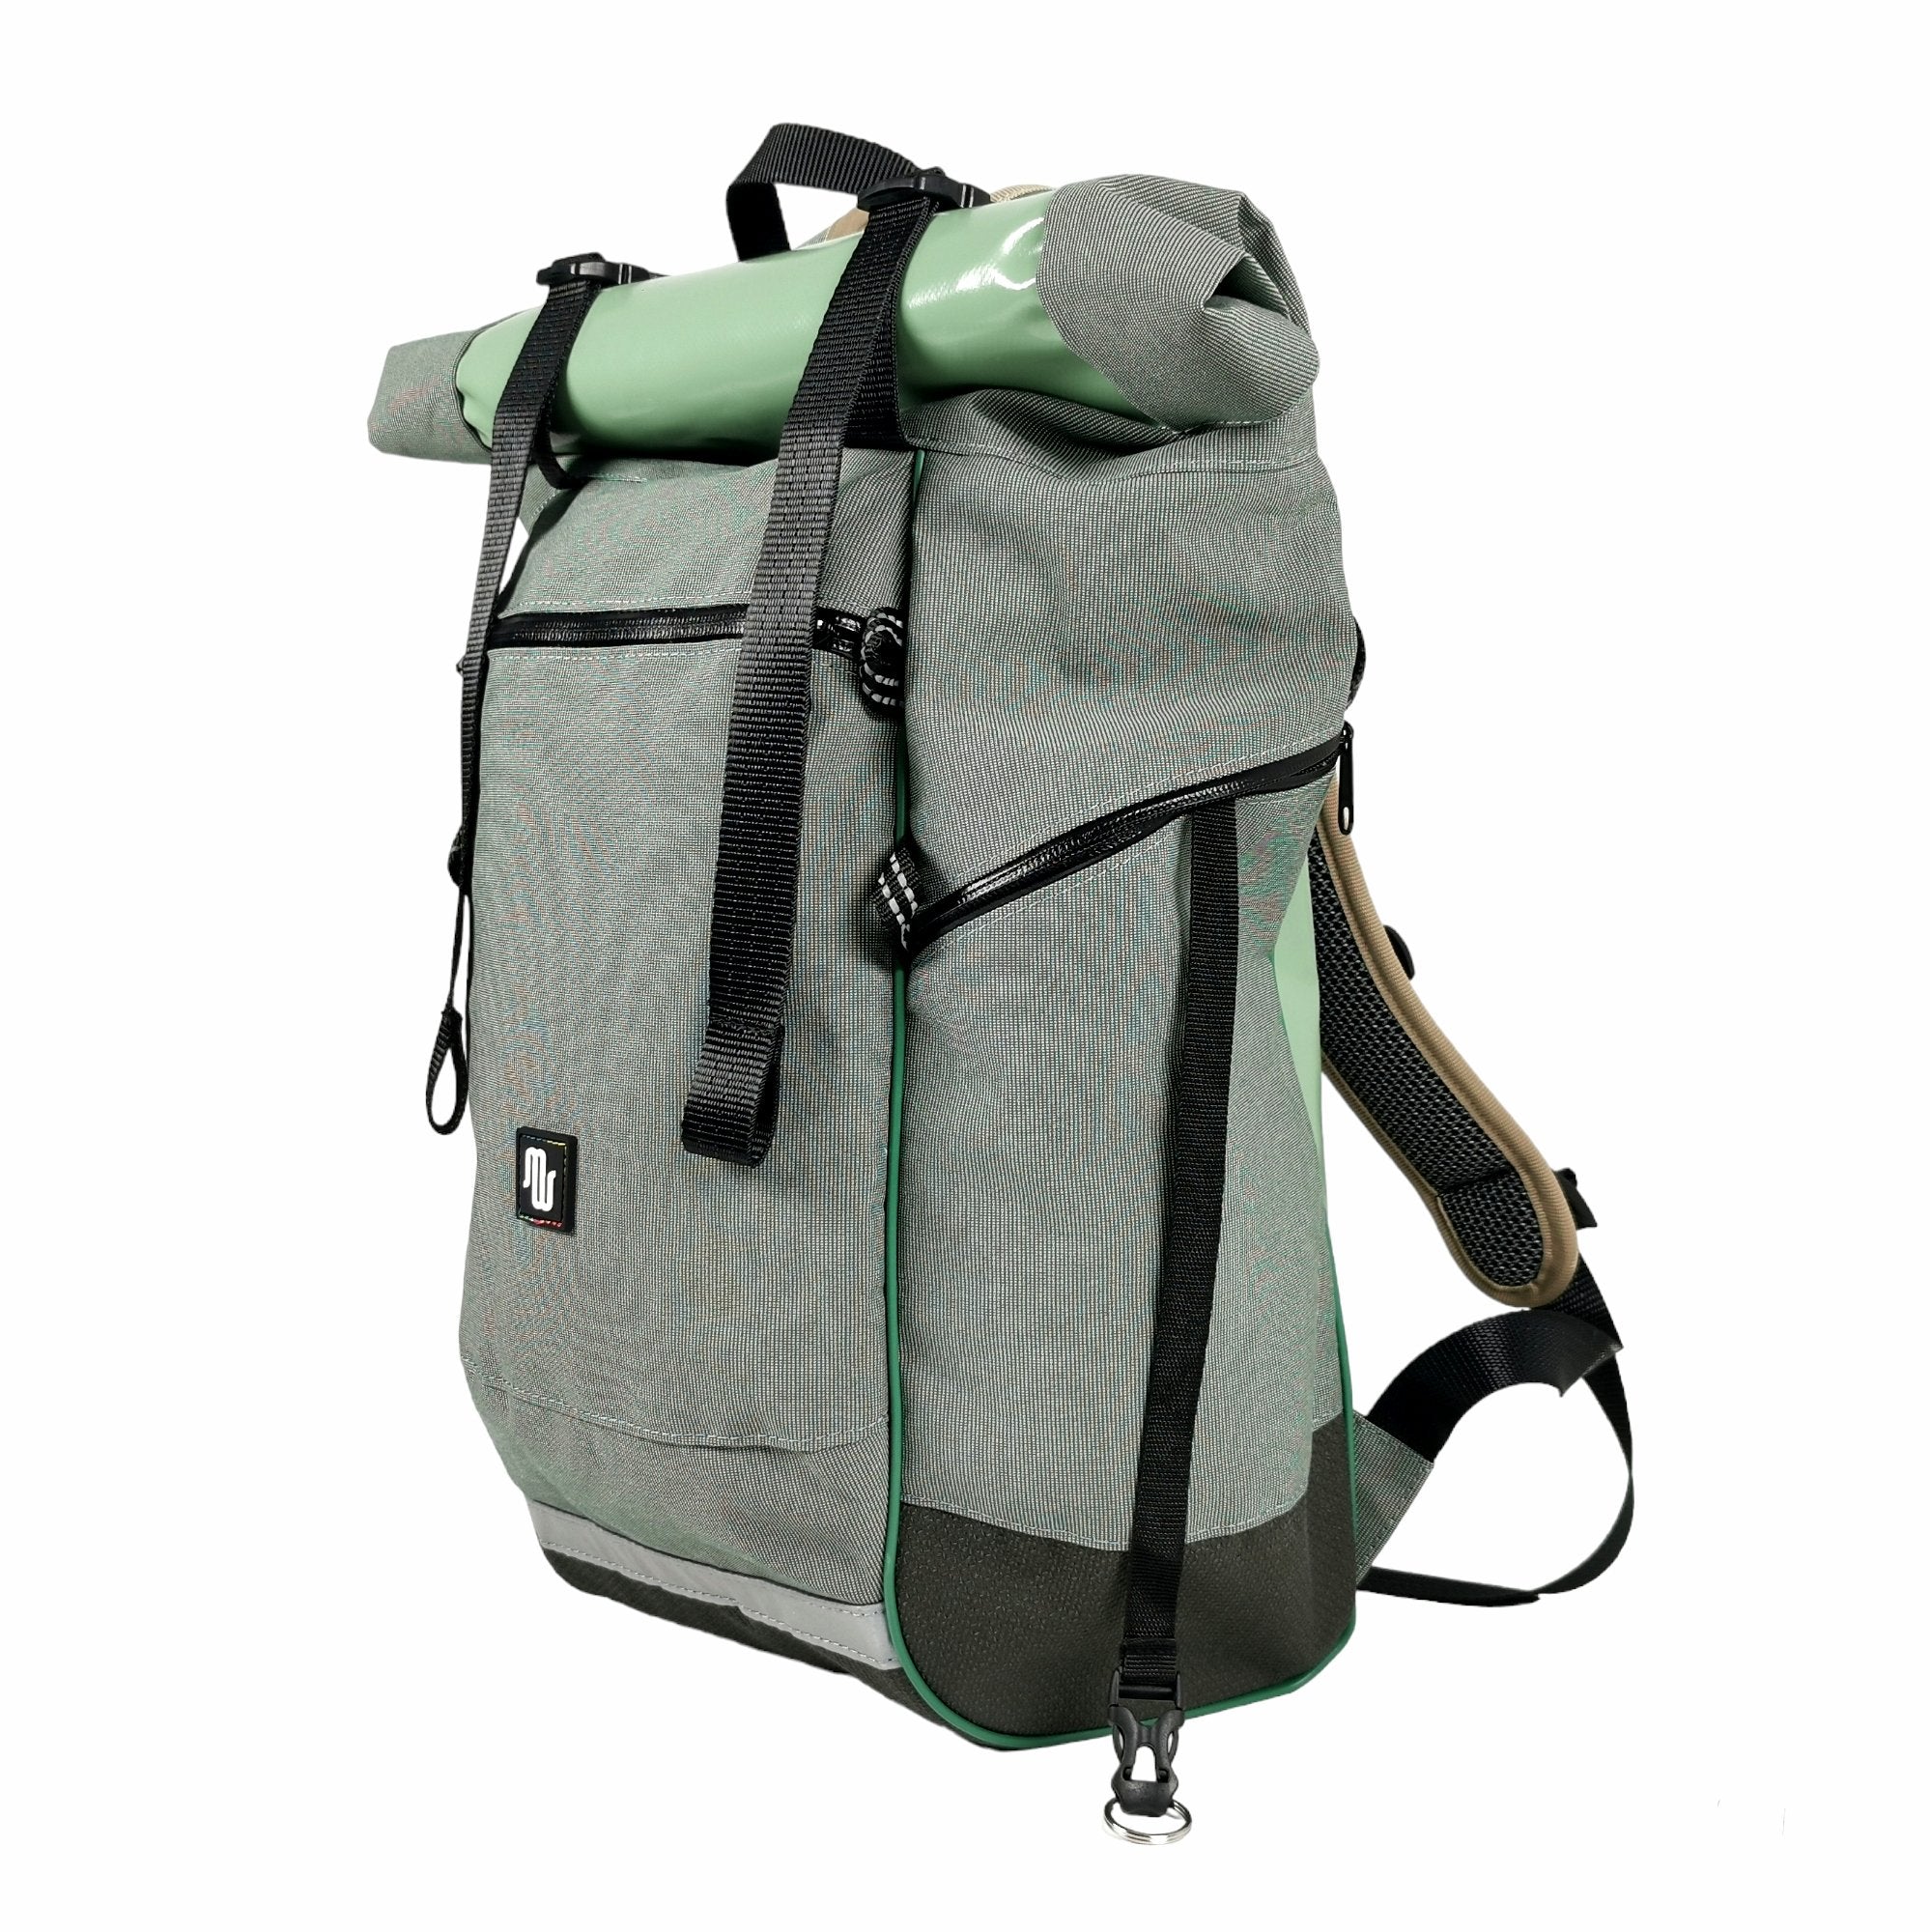 BUD Light No. 029 - Backpacks - medencebag